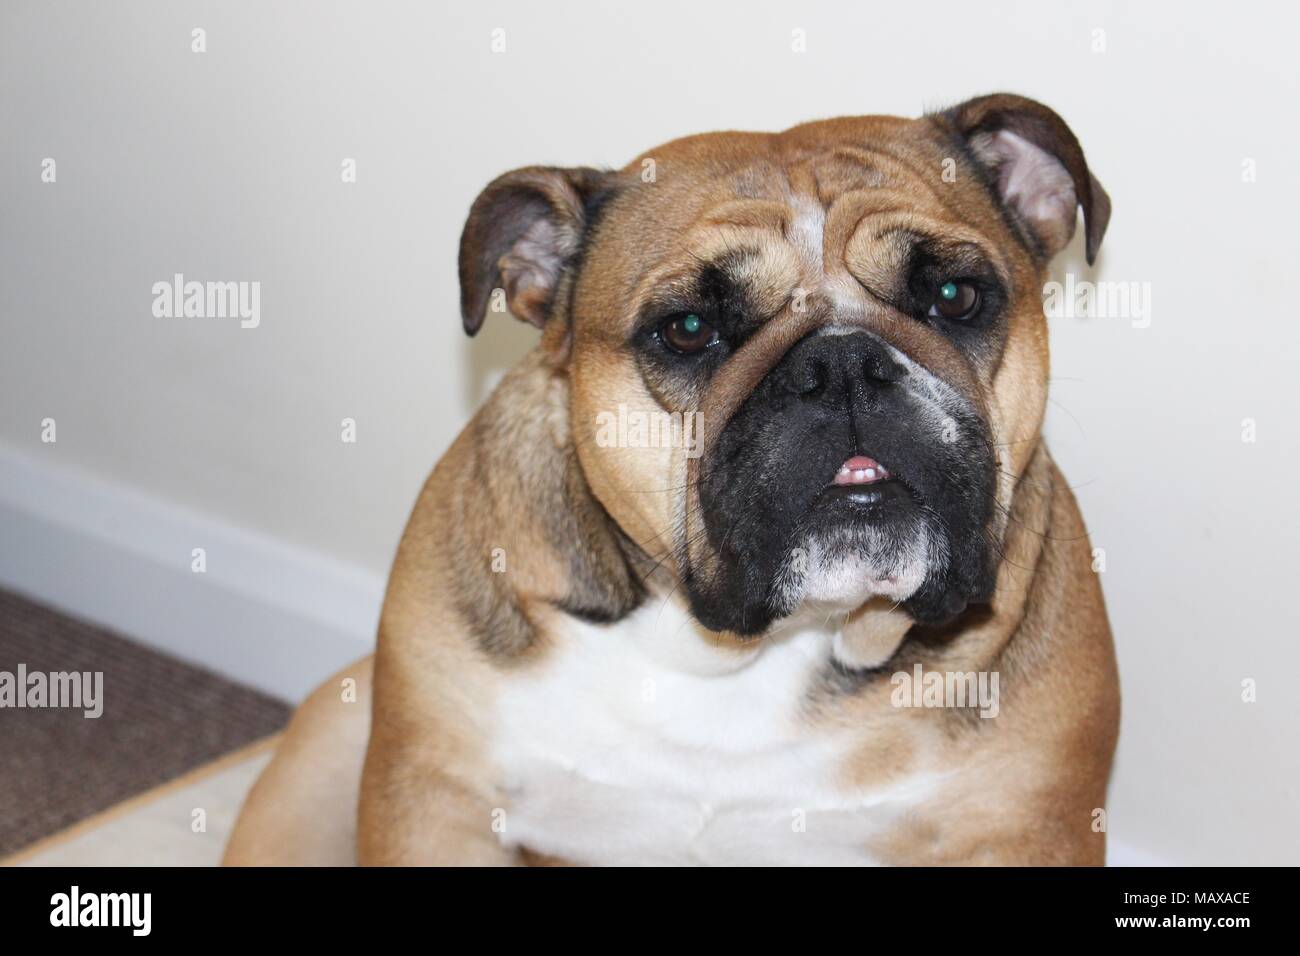 British Bulldog looking quizzically at camera Stock Photo